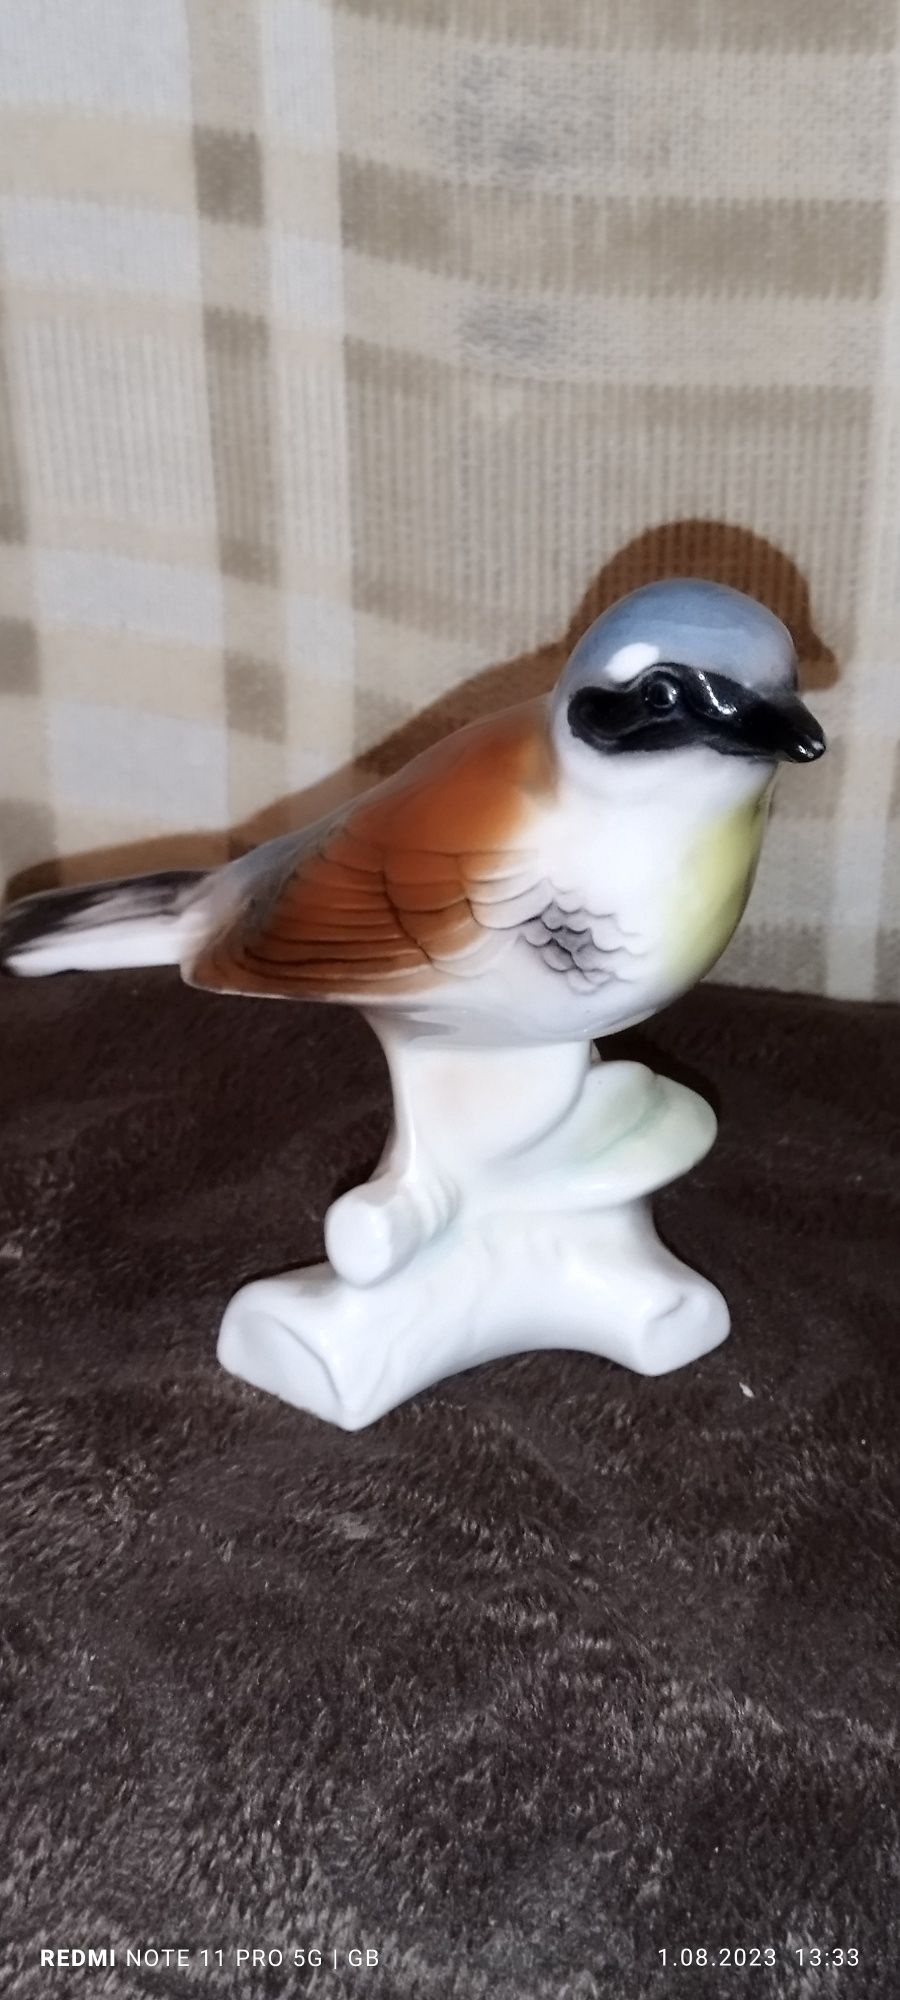 Sprzedam figurkę ptaka porcelanową z lat 60 oryginał